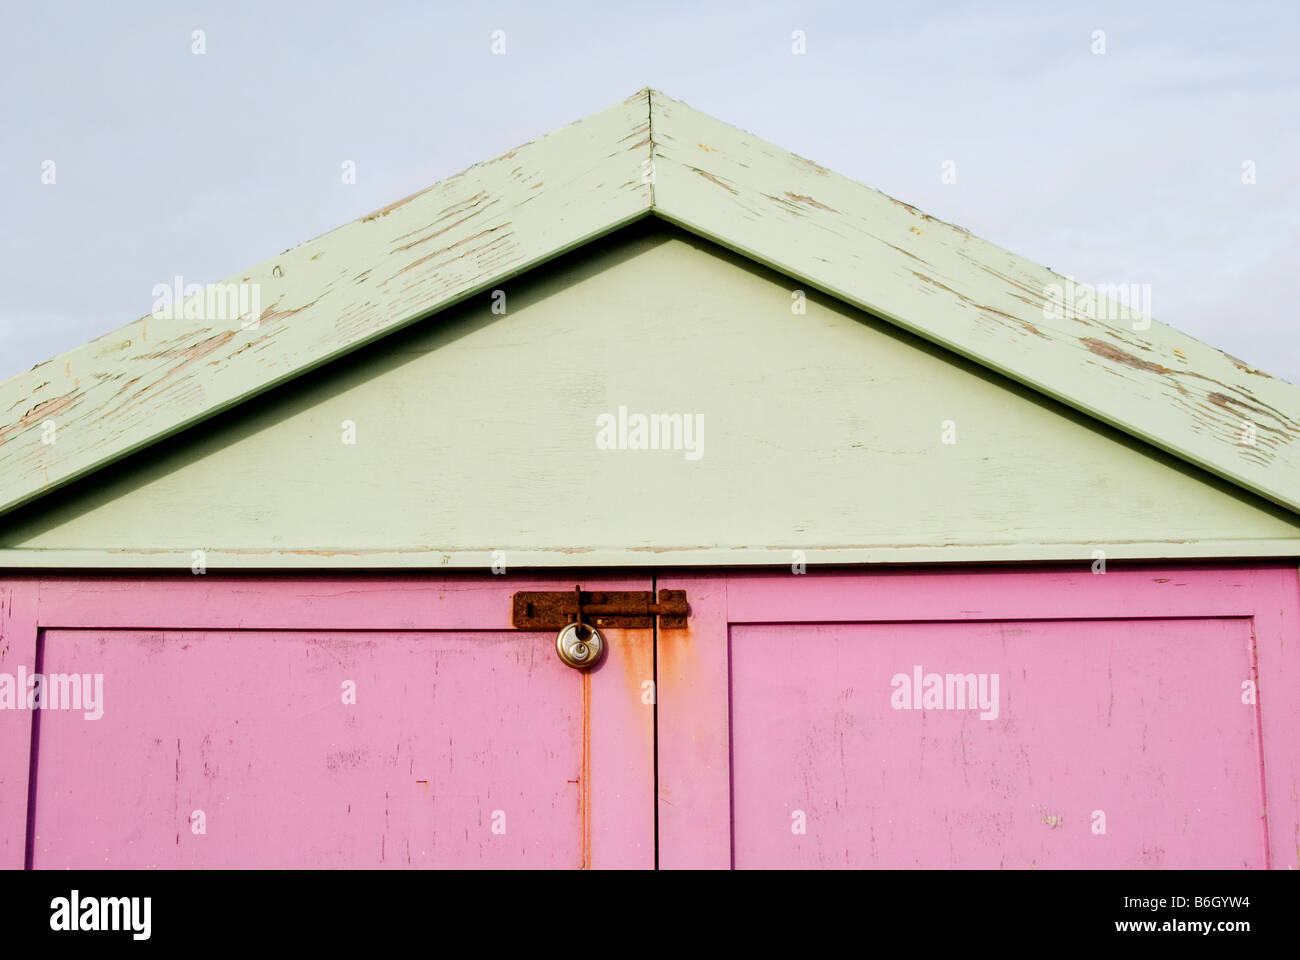 Una immagine della parte superiore della capanna sulla spiaggia con le porte dipinte di rosa e il tetto verniciato di verde, la serratura della porta è arrugginito Foto Stock